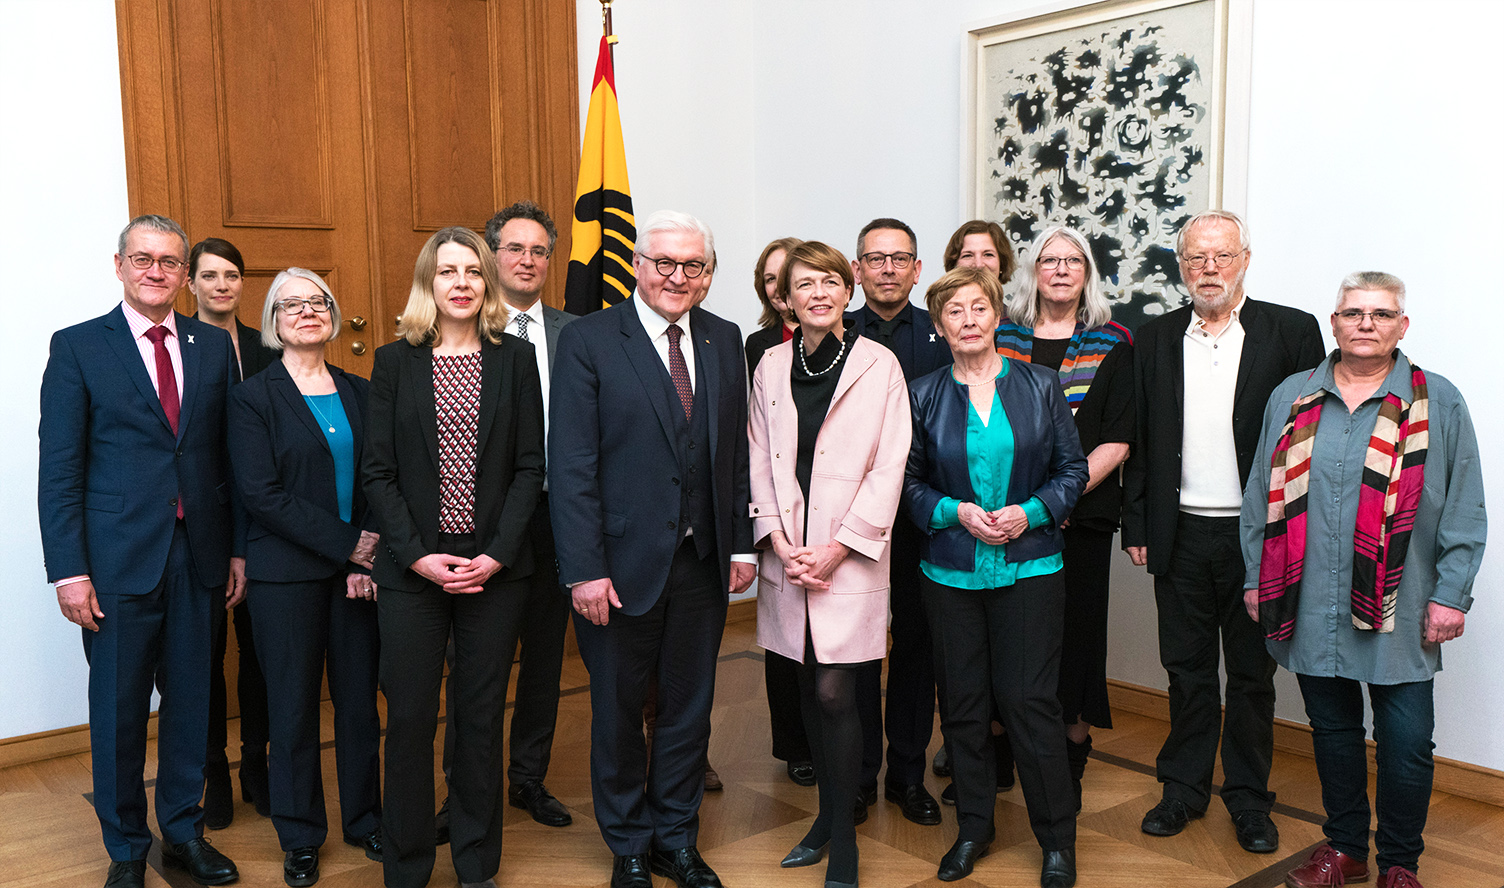 Gruppenfoto mit Bundespräsident Frank-Walter Steinmeier